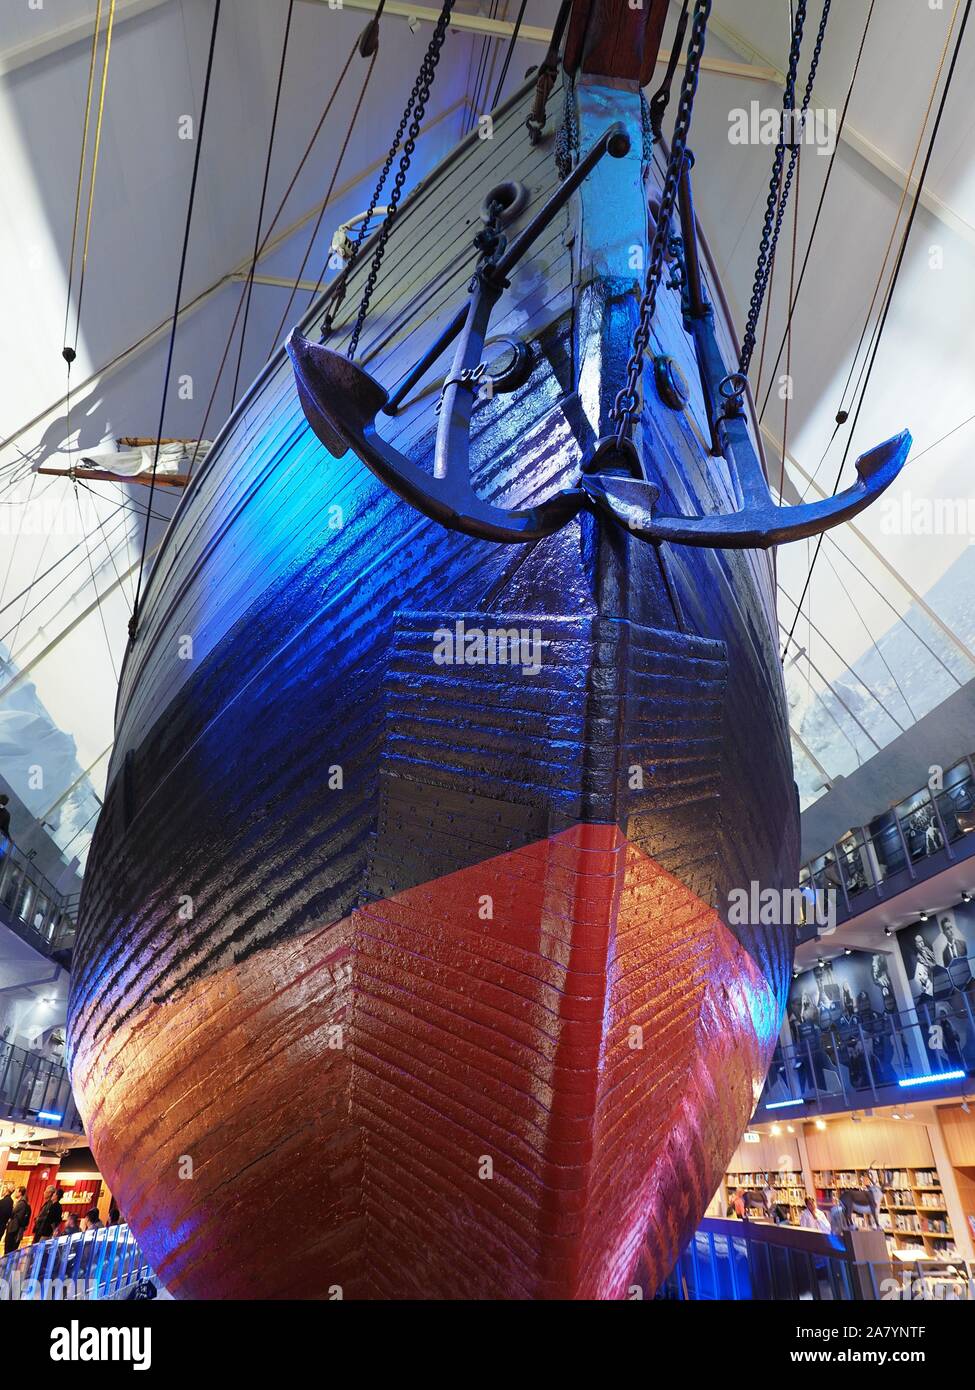 Navire polaire Fram utilisé par l'explorateur Roald Amundsen en expéditions polaires dans la ville européenne de Oslo en Norvège - verticale Banque D'Images